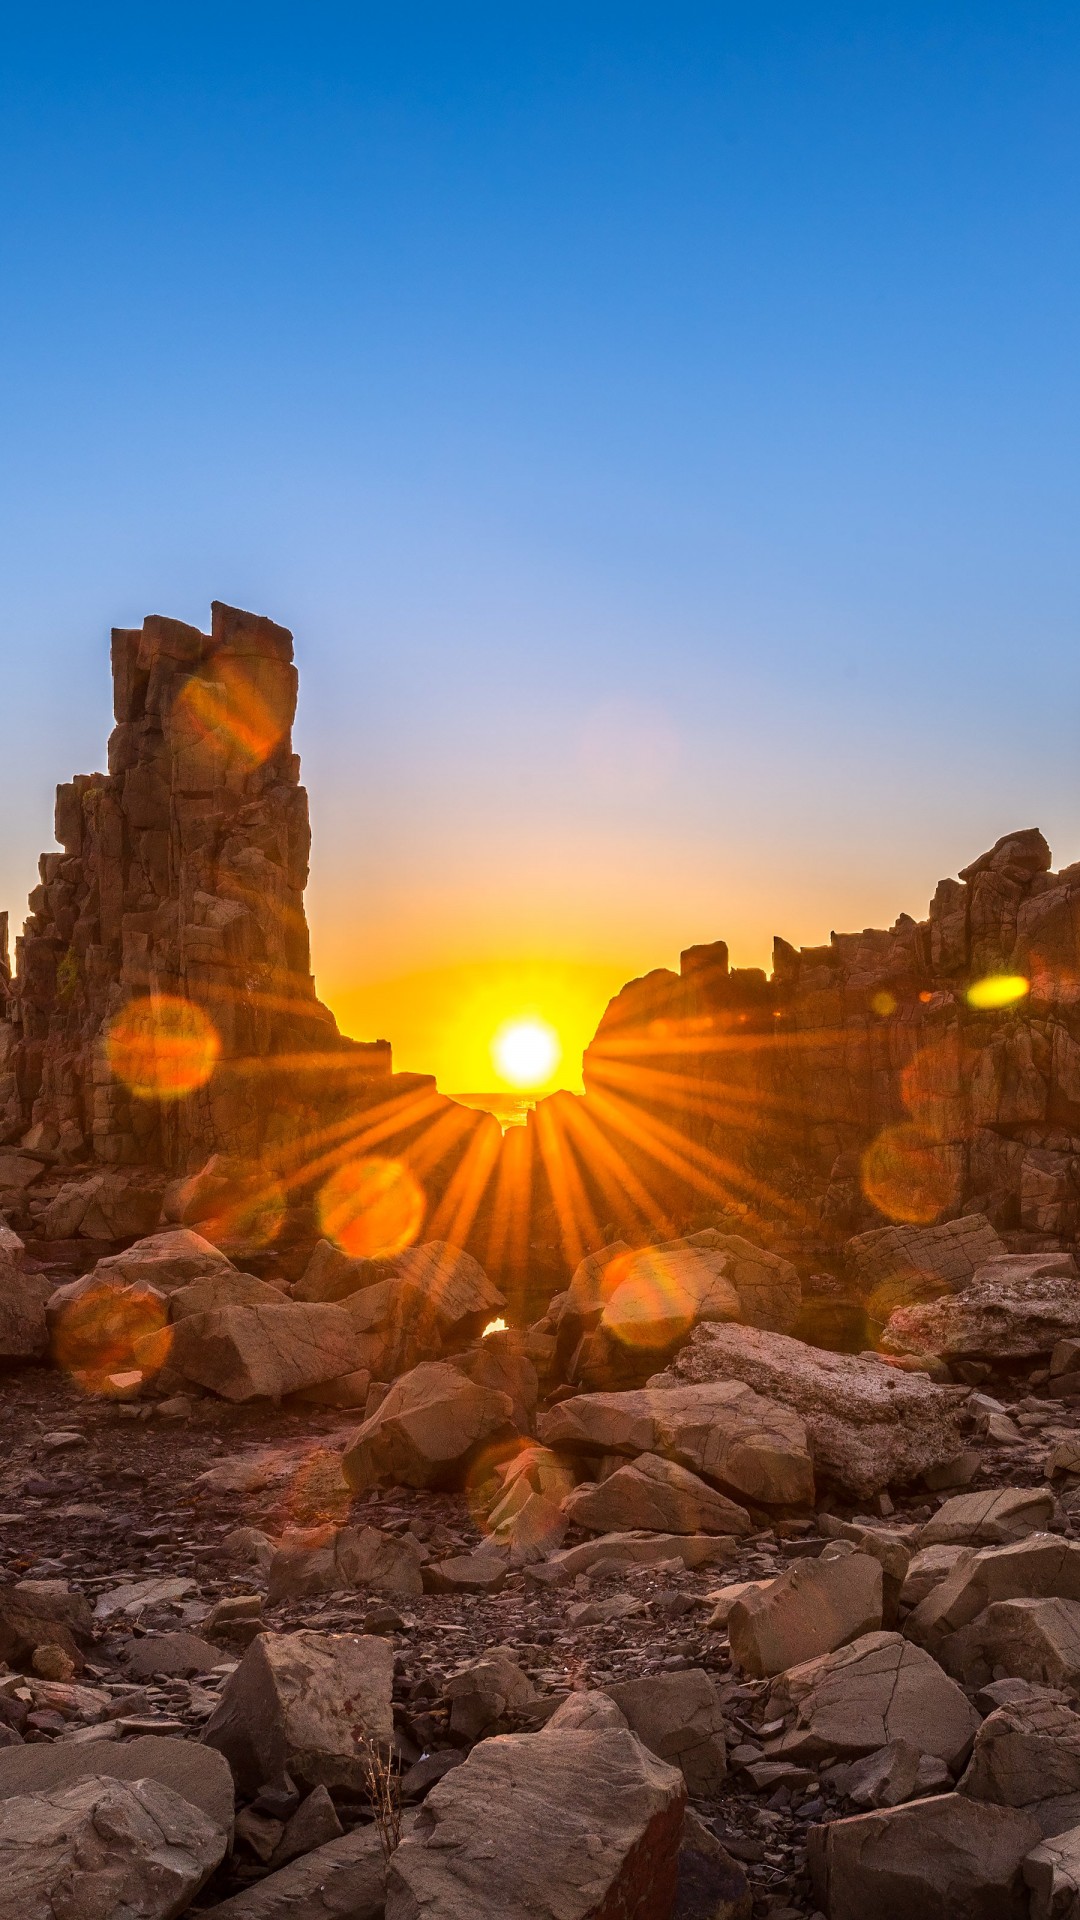 Sunrise Over Bombo Headland, Australia Wallpaper for Google Nexus 5